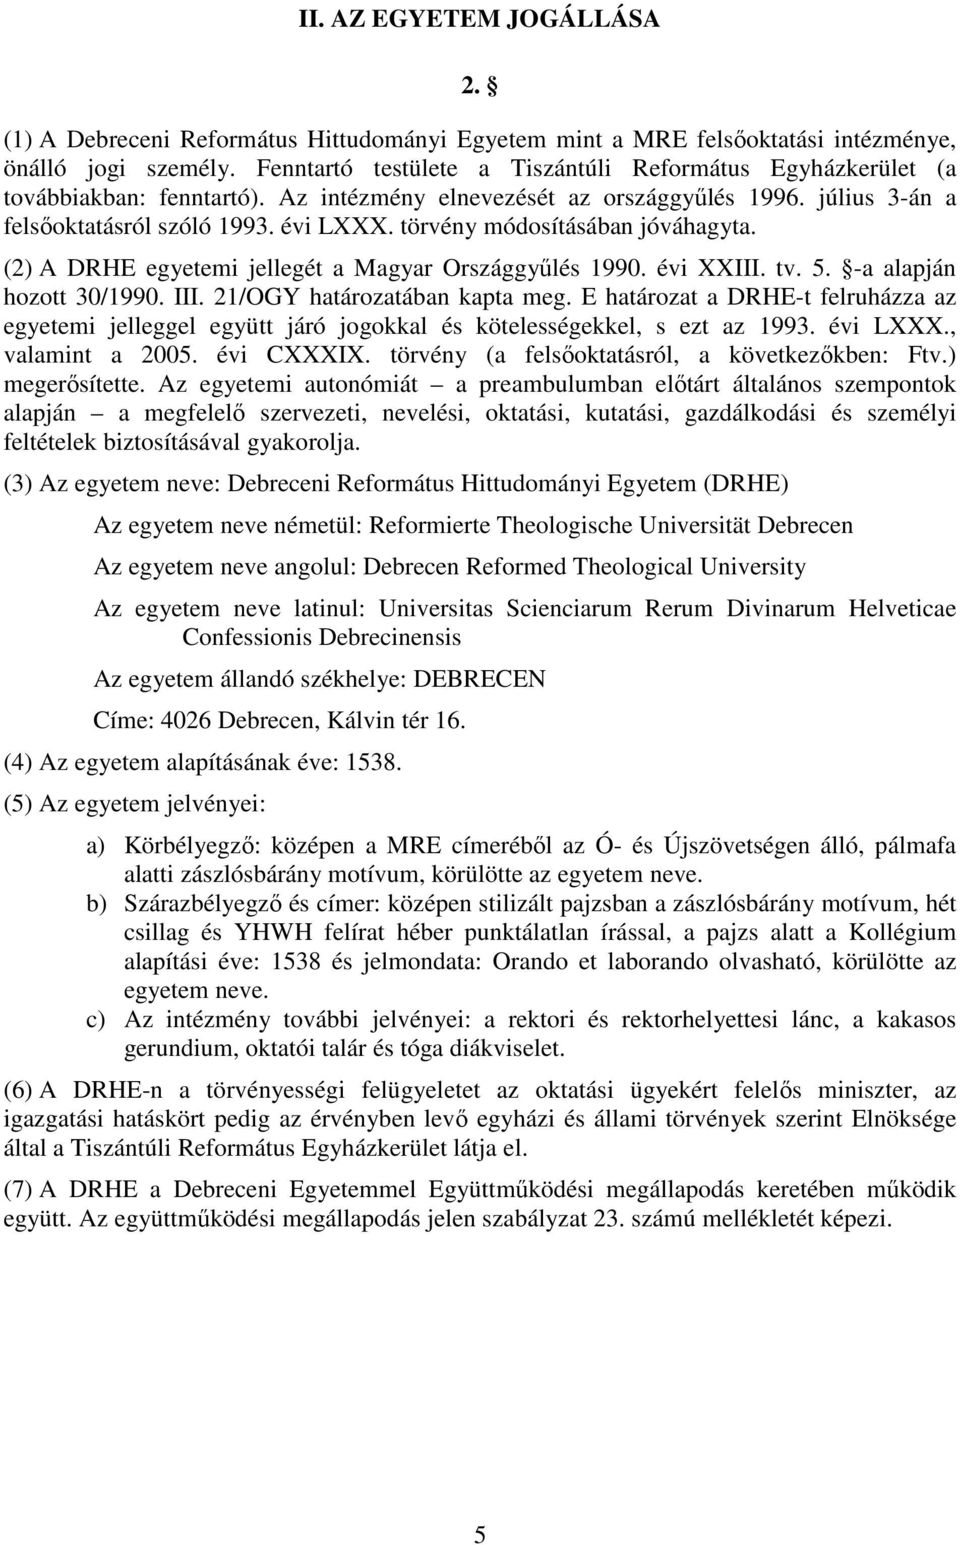 törvény módosításában jóváhagyta. (2) A DRHE egyetemi jellegét a Magyar Országgyűlés 1990. évi XXIII. tv. 5. -a alapján hozott 30/1990. III. 21/OGY határozatában kapta meg.